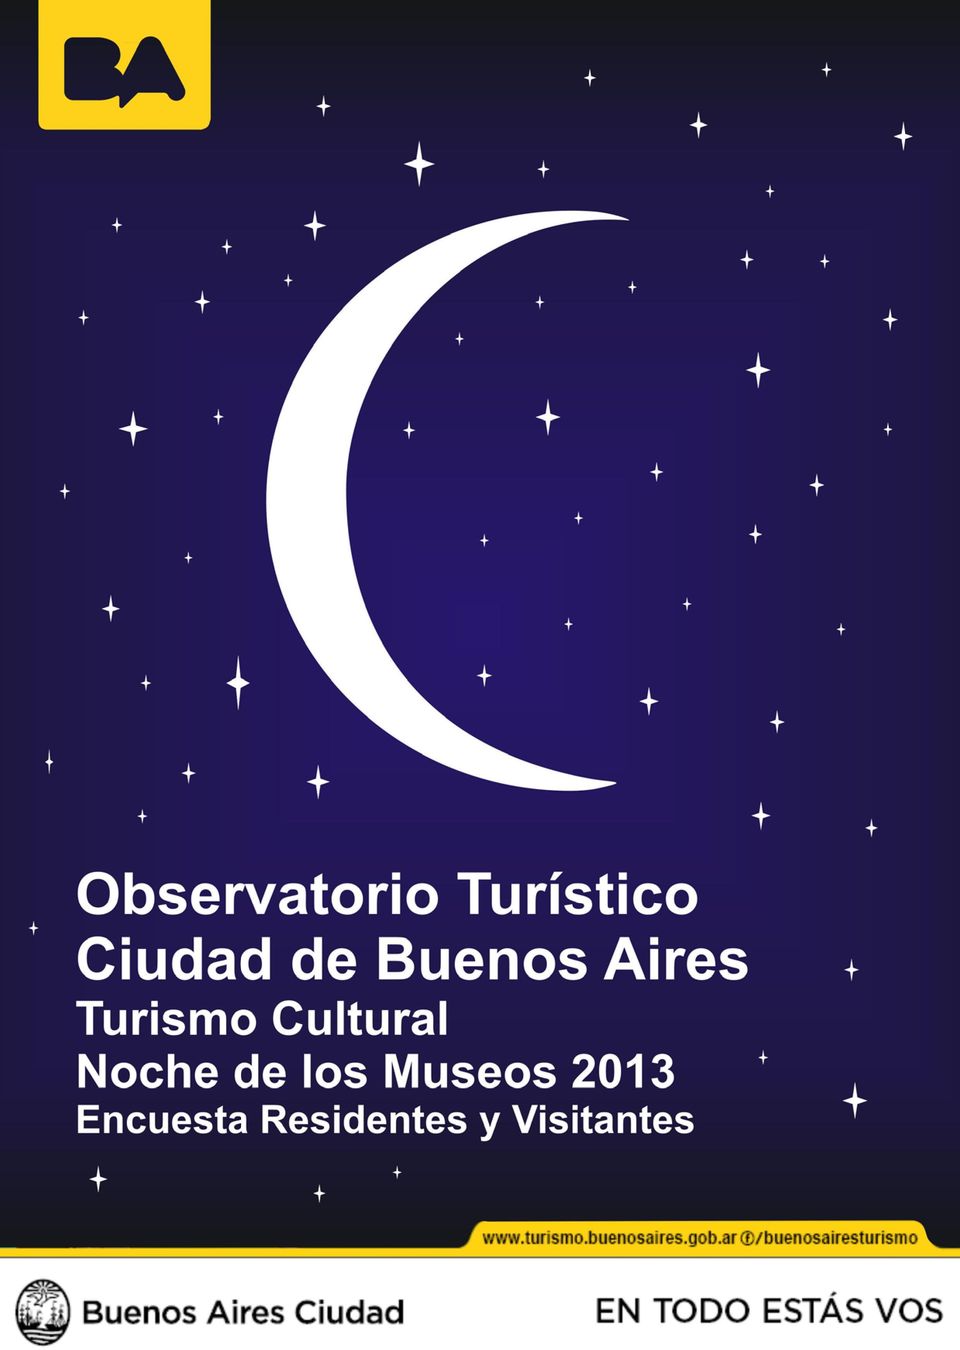 Cultural Noche de Los Museos